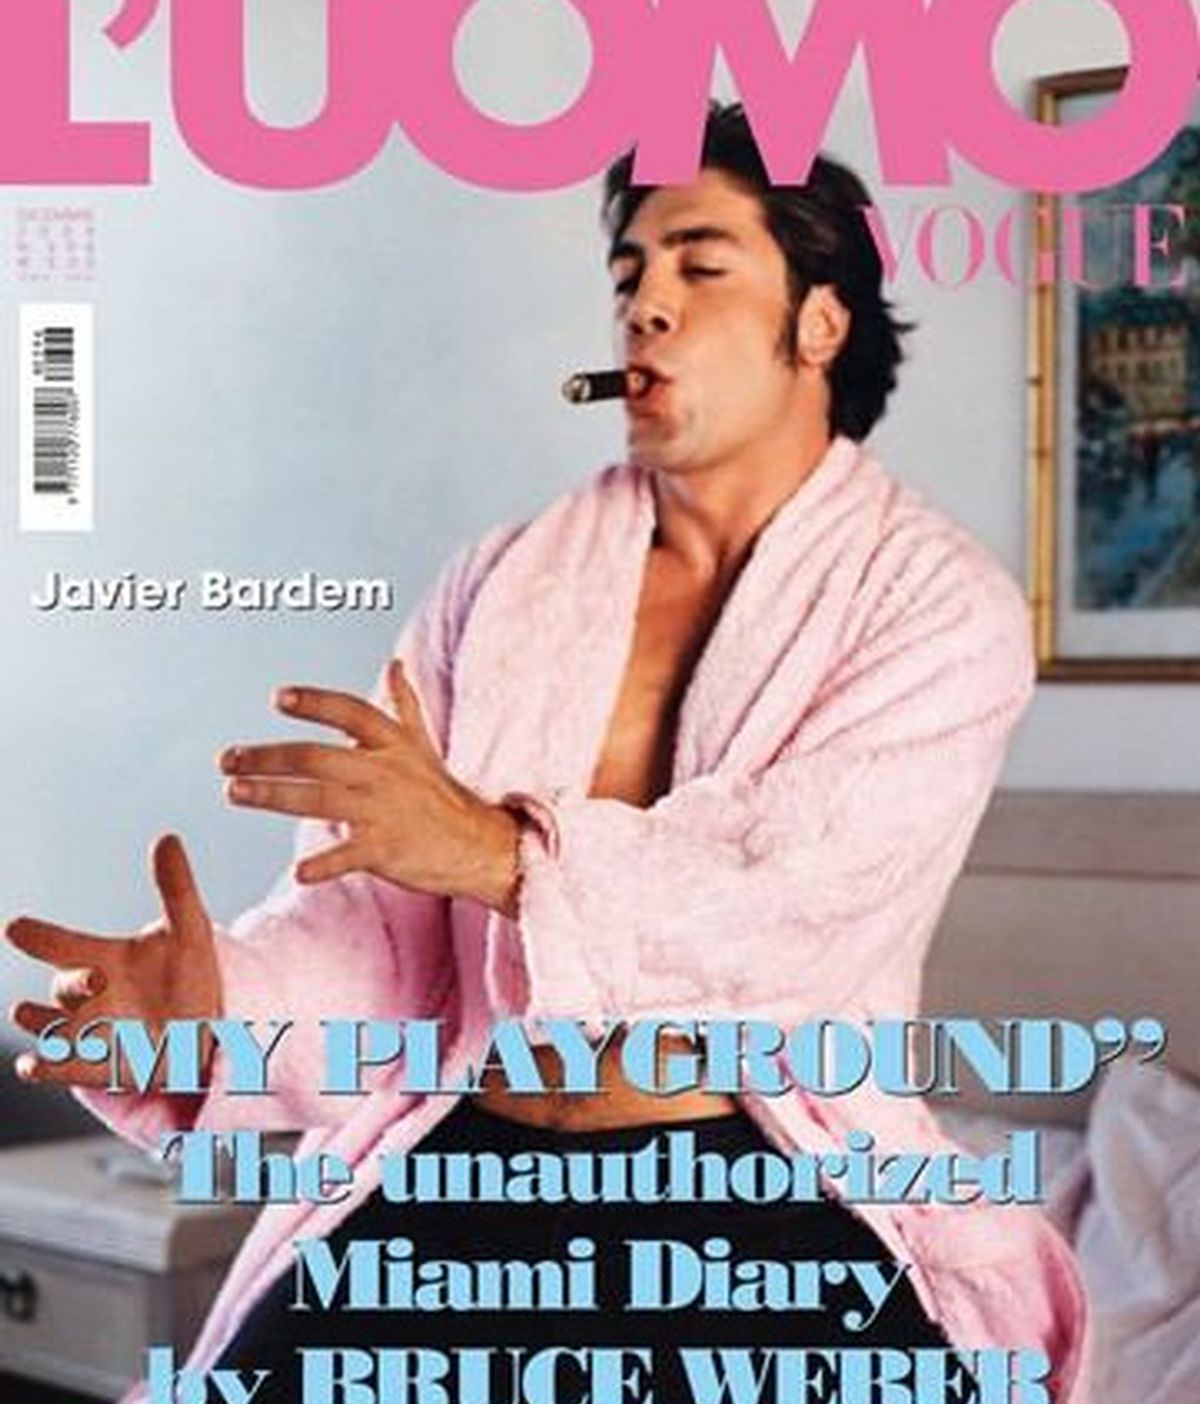 Portada de la edición italiana de L'Uomo Vogue. Foto: Bruce Weber / Vogue